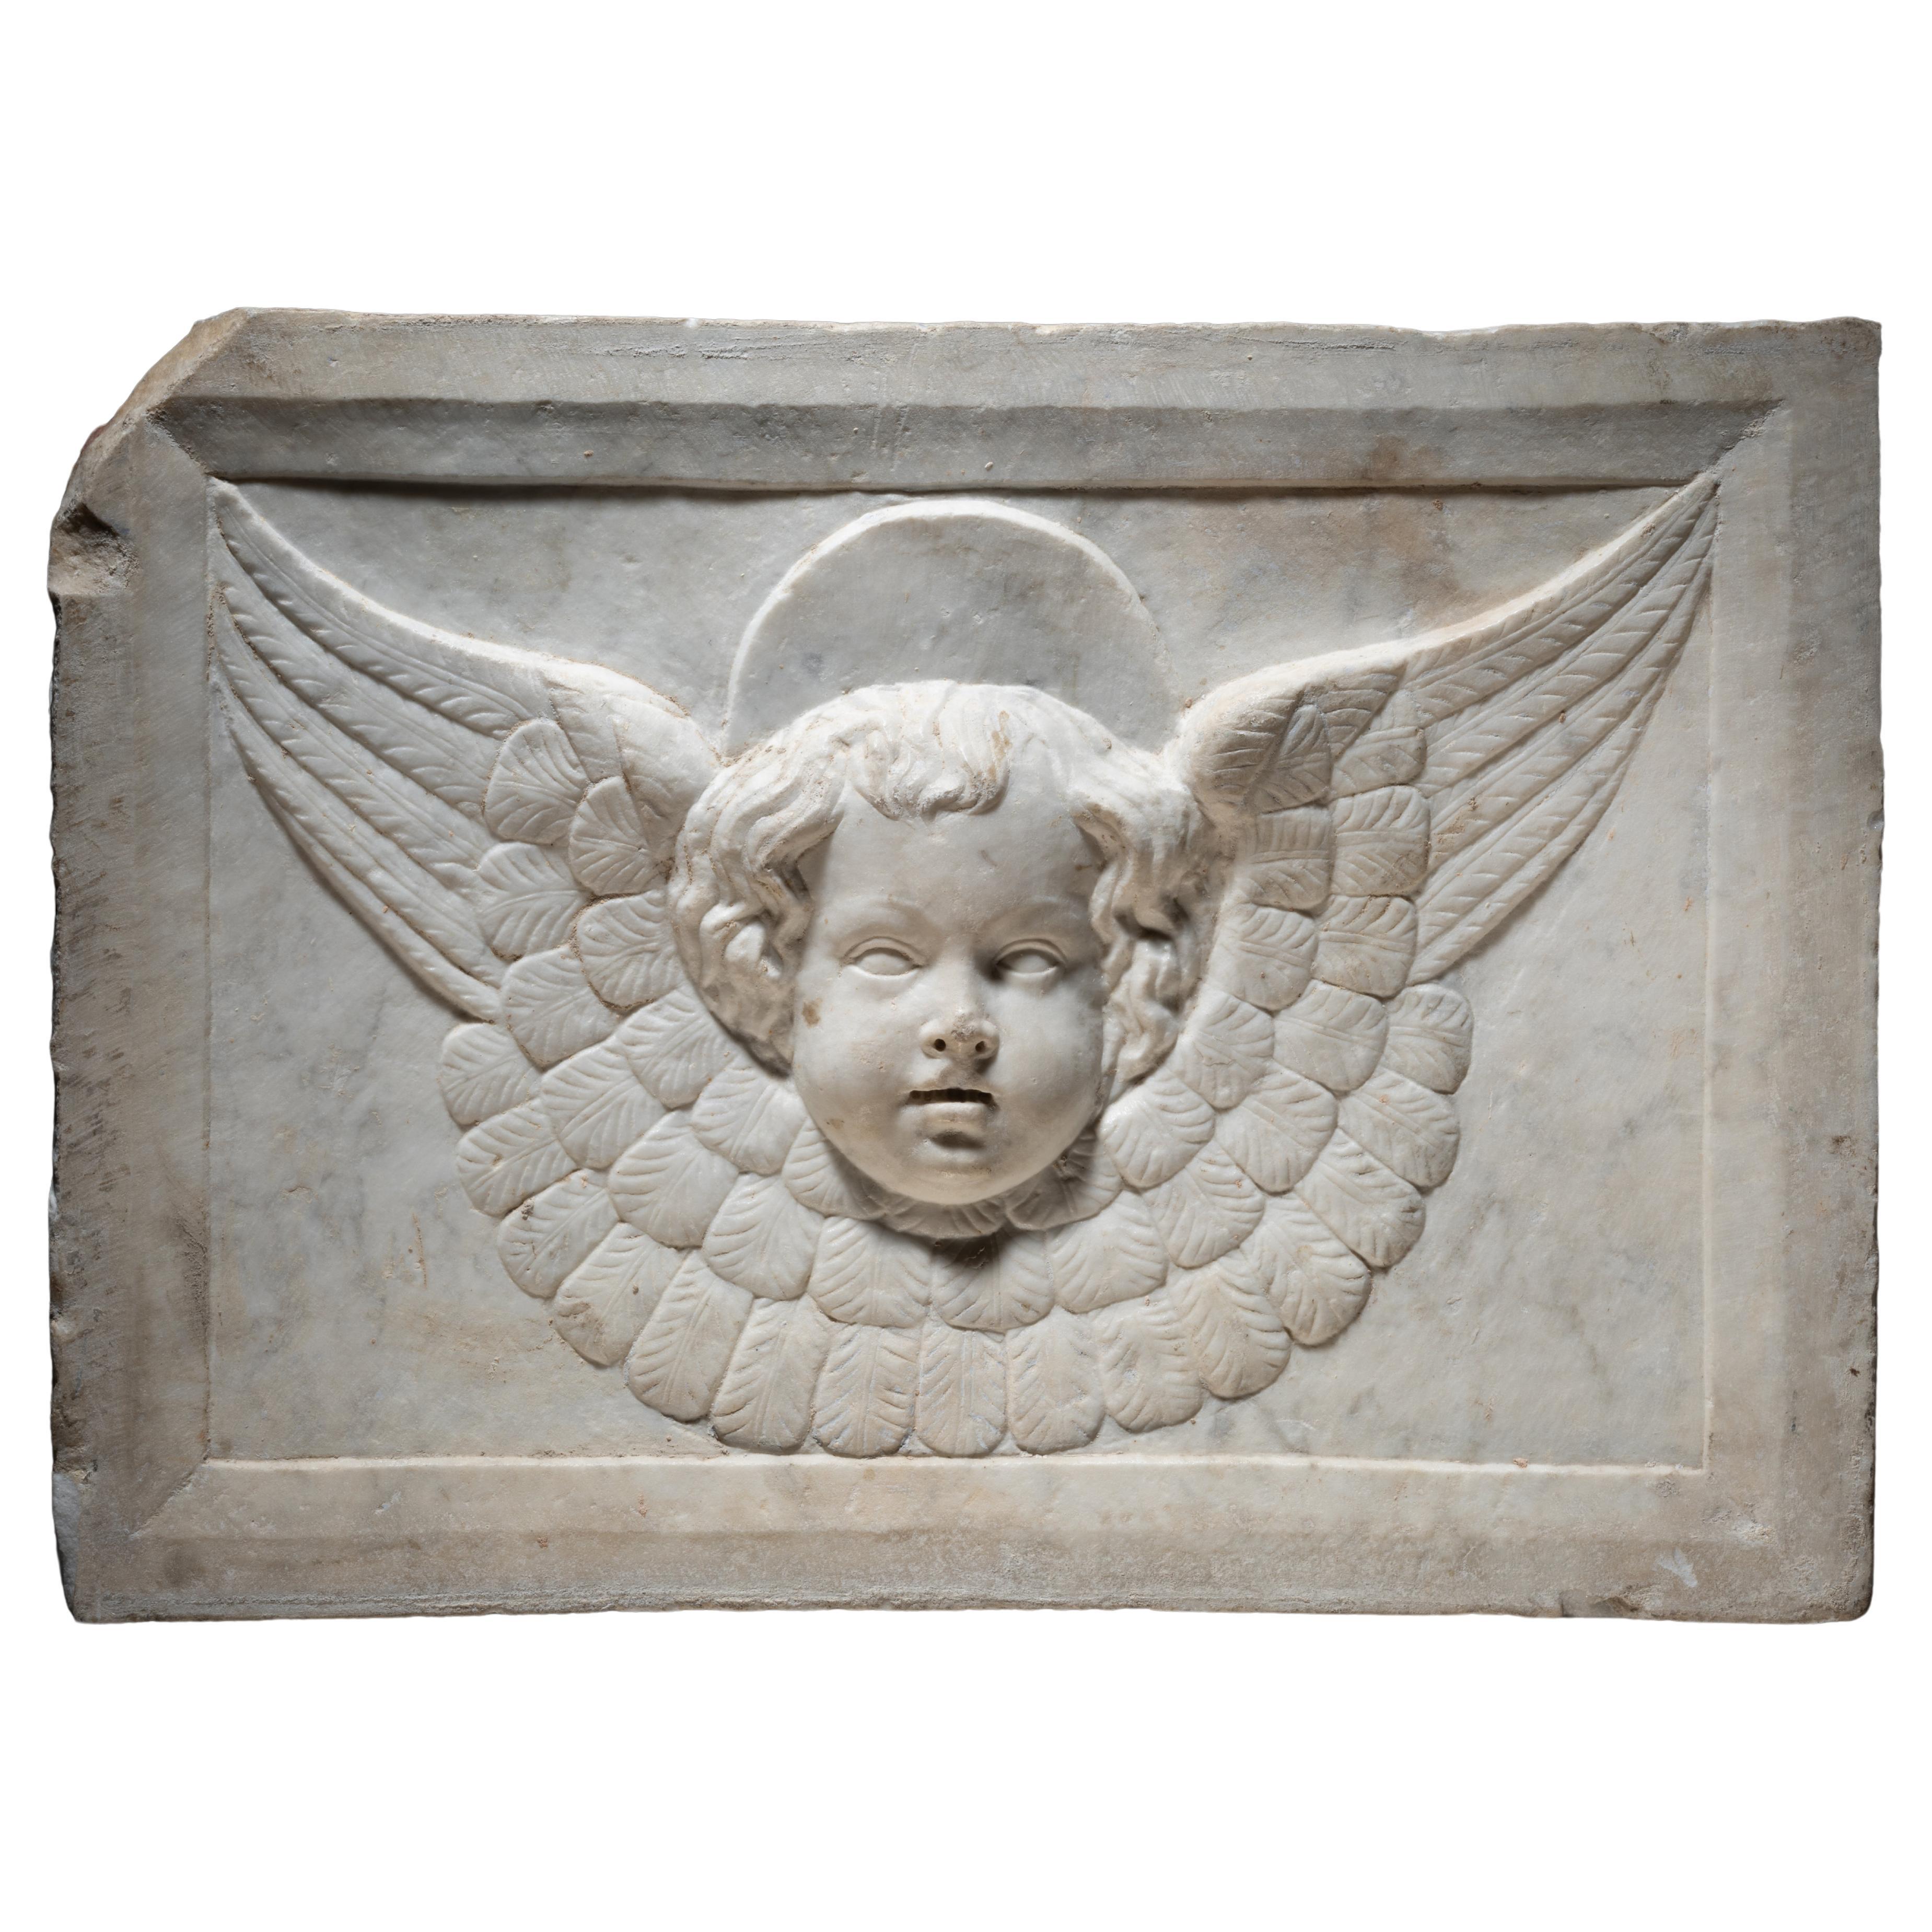 Cercle of Jacopo della Pila - Marble relief depicting a winged Cherub